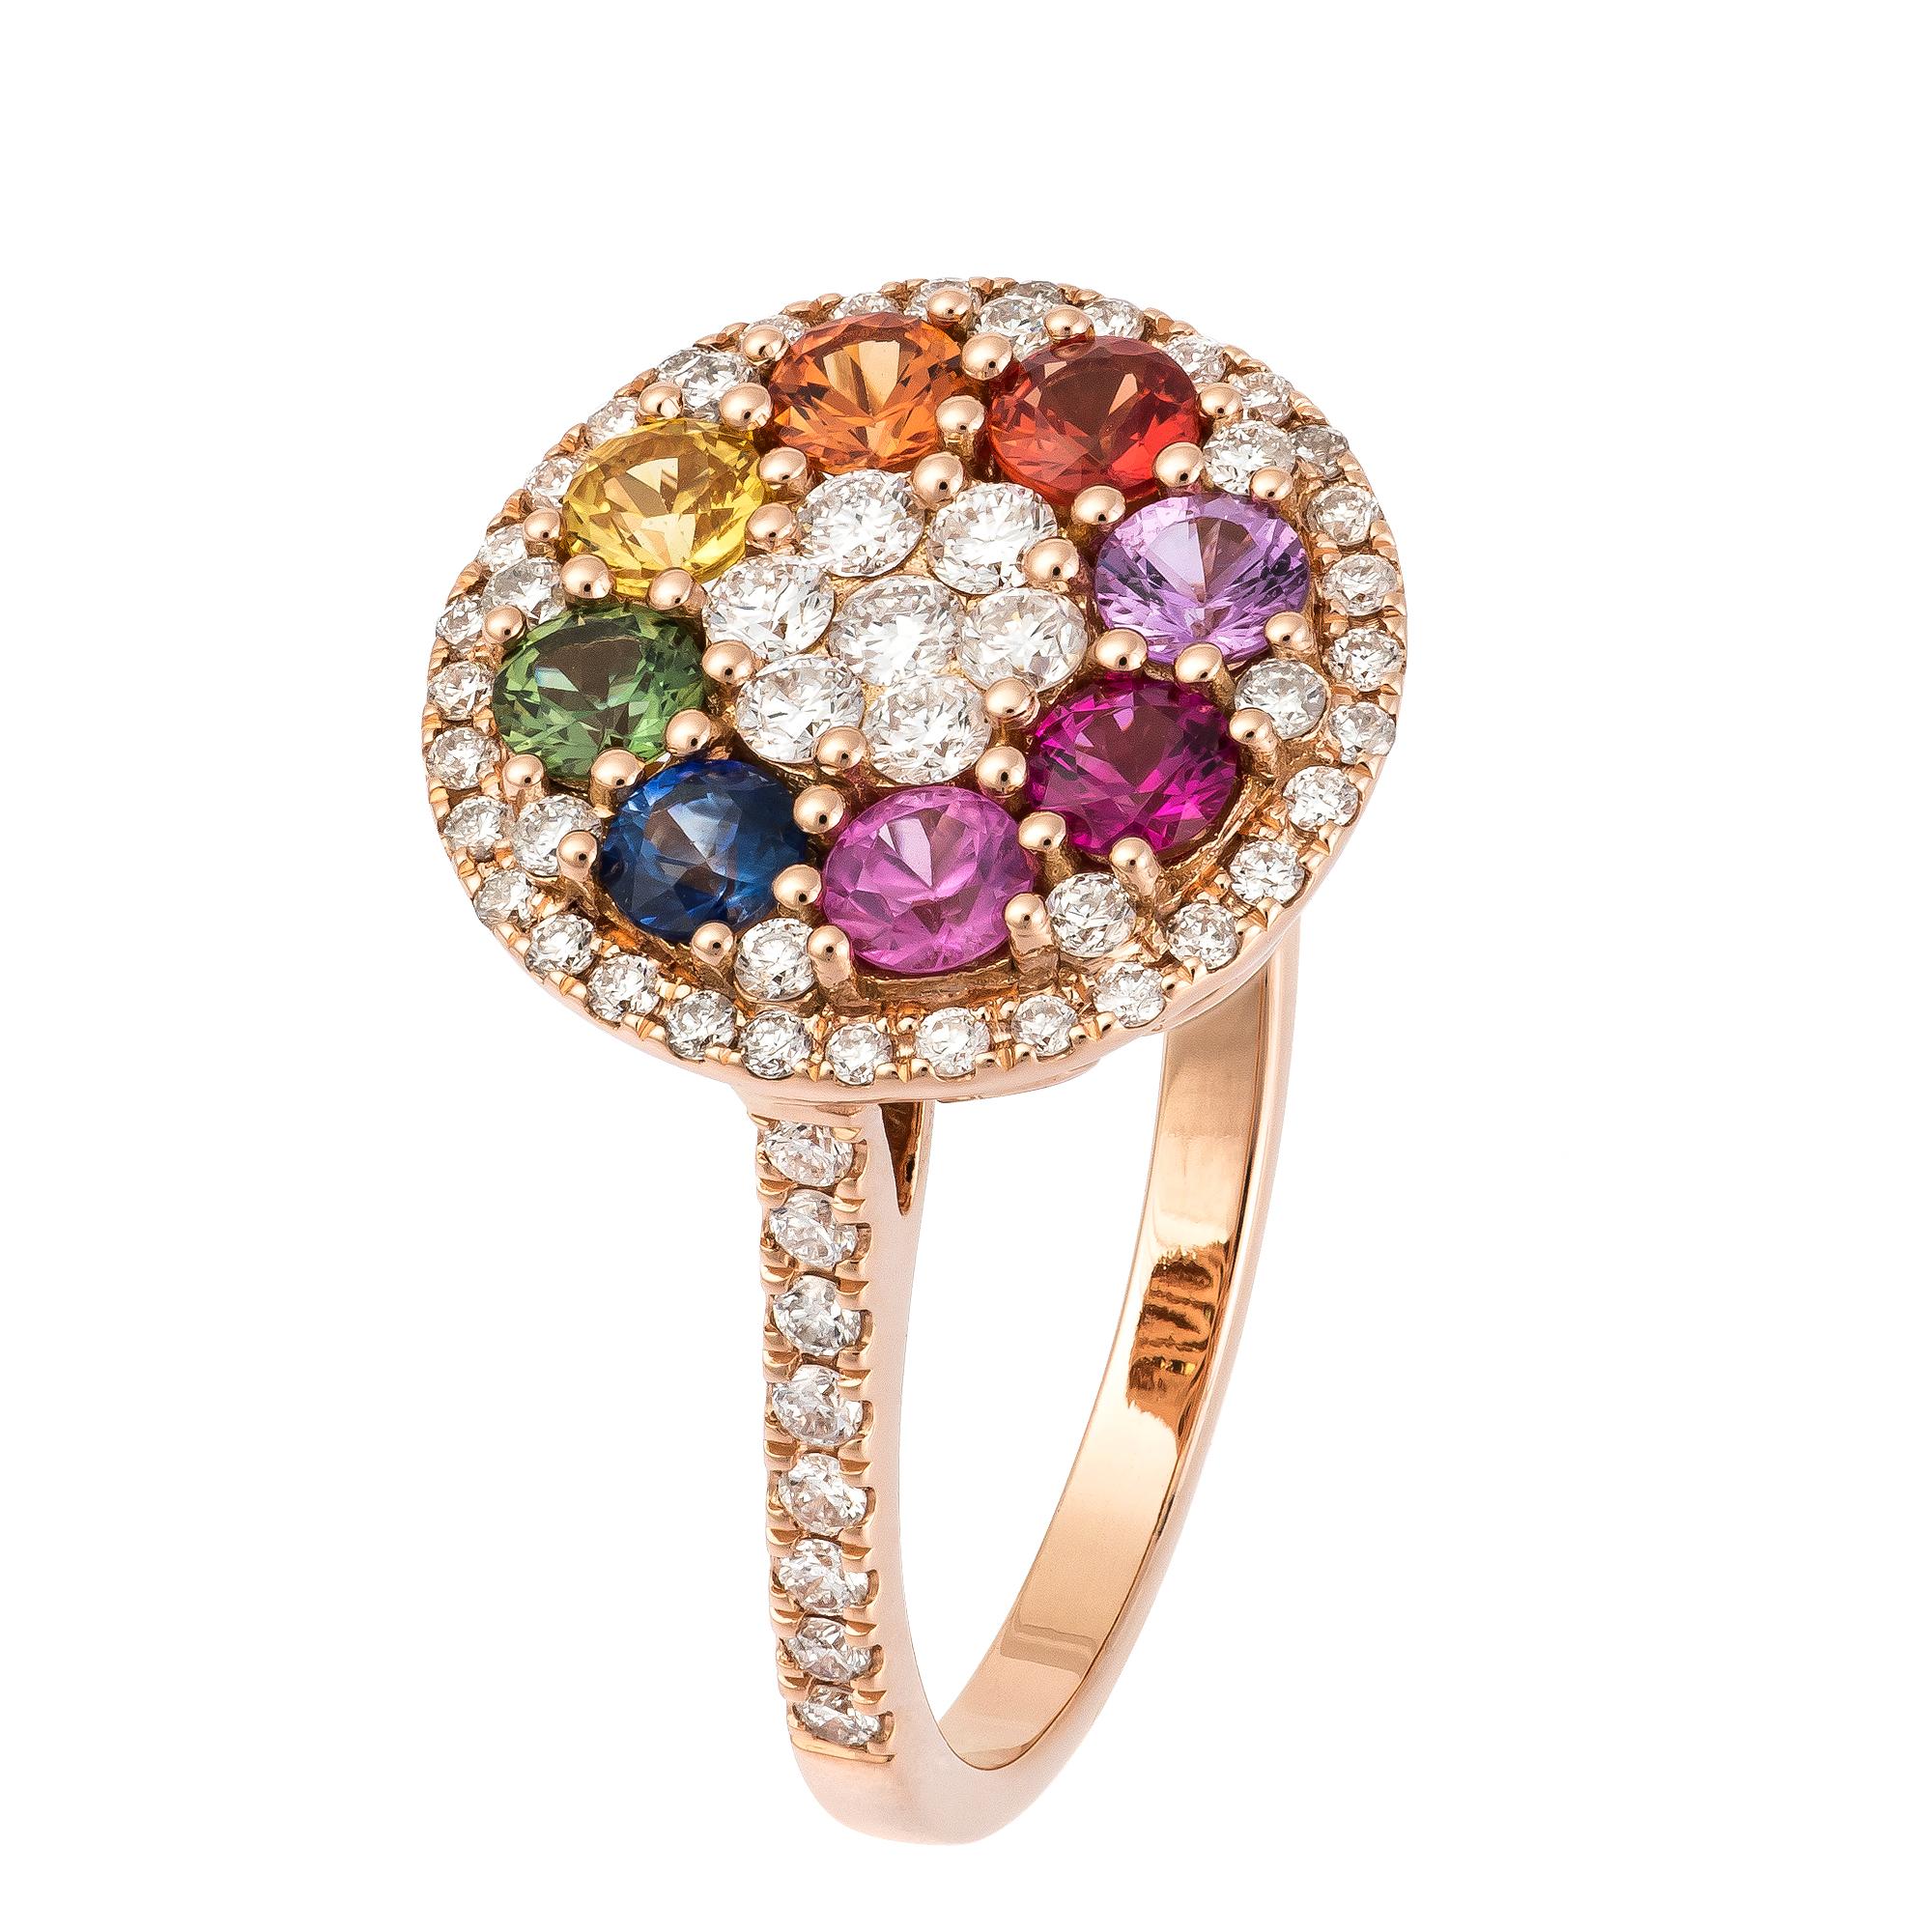 RING 18K Rose Gold Diamond 0.61 Cts/63 Pcs Multi Sapphire 1.14 Cts/8 Pcs